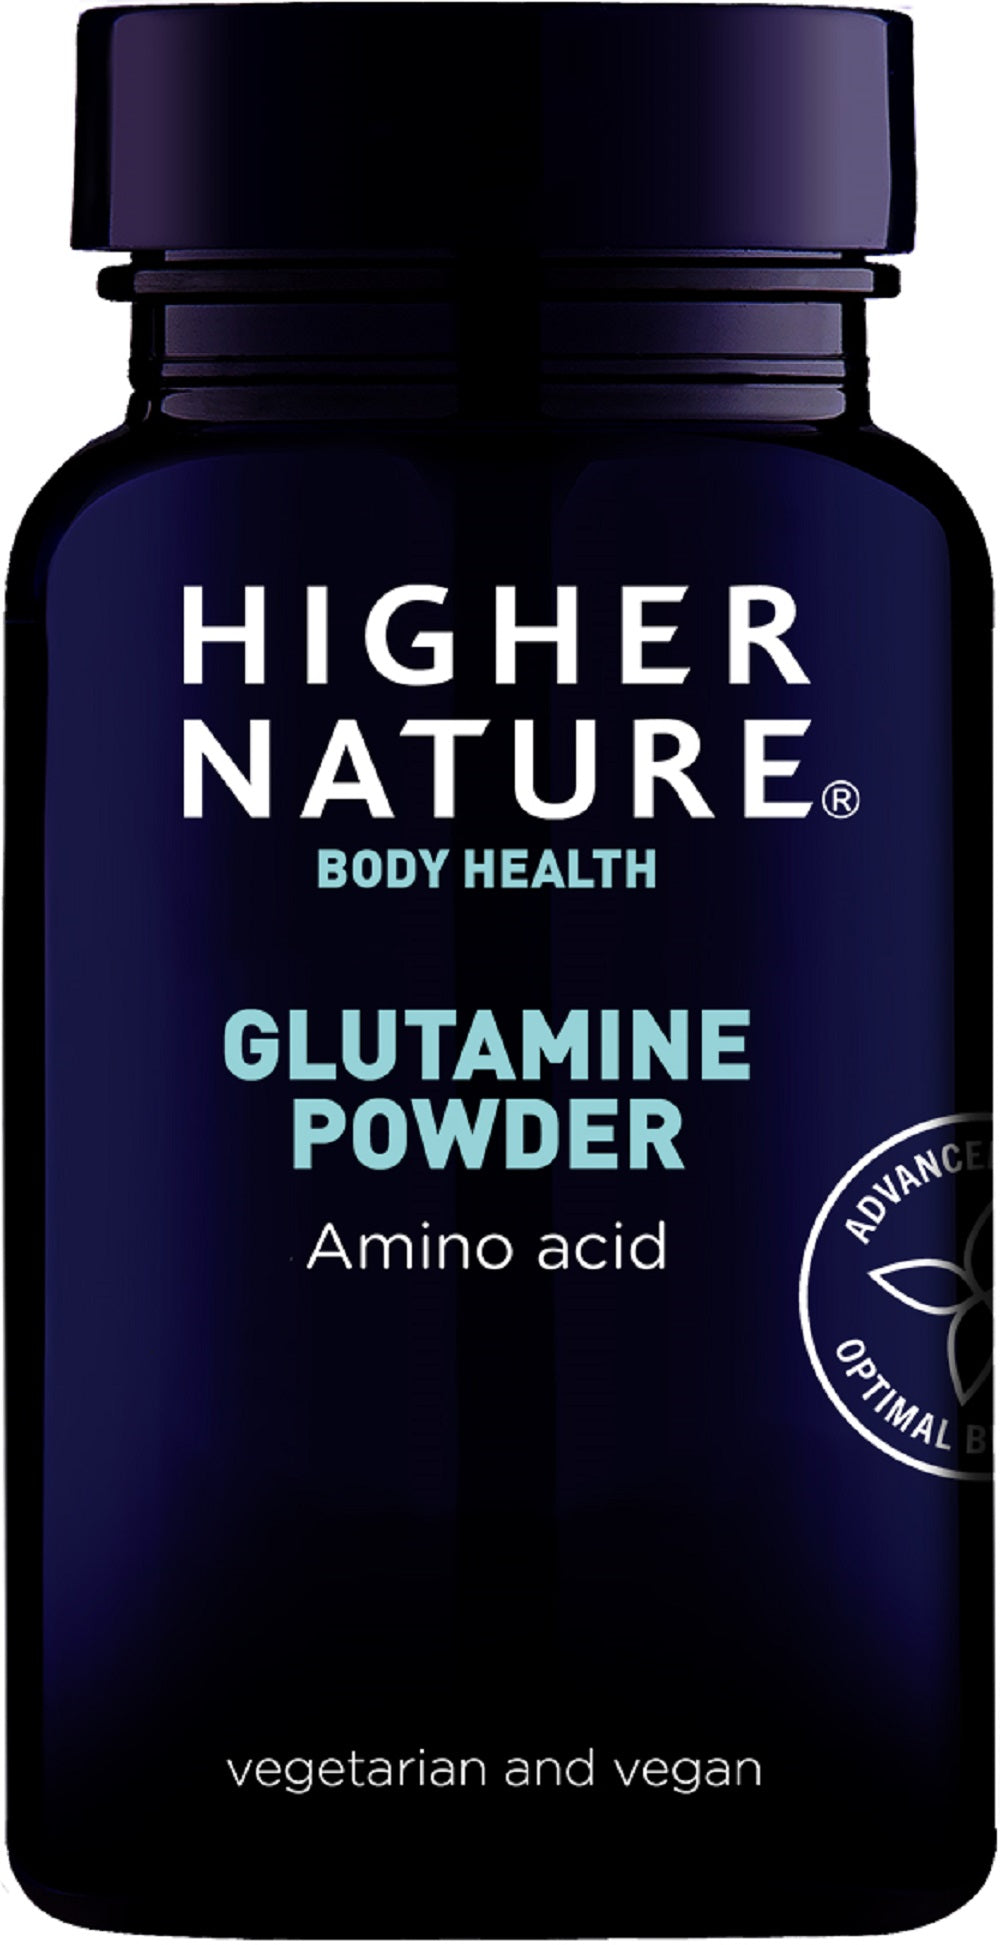 Higher Nature Glutamine Powder 200g